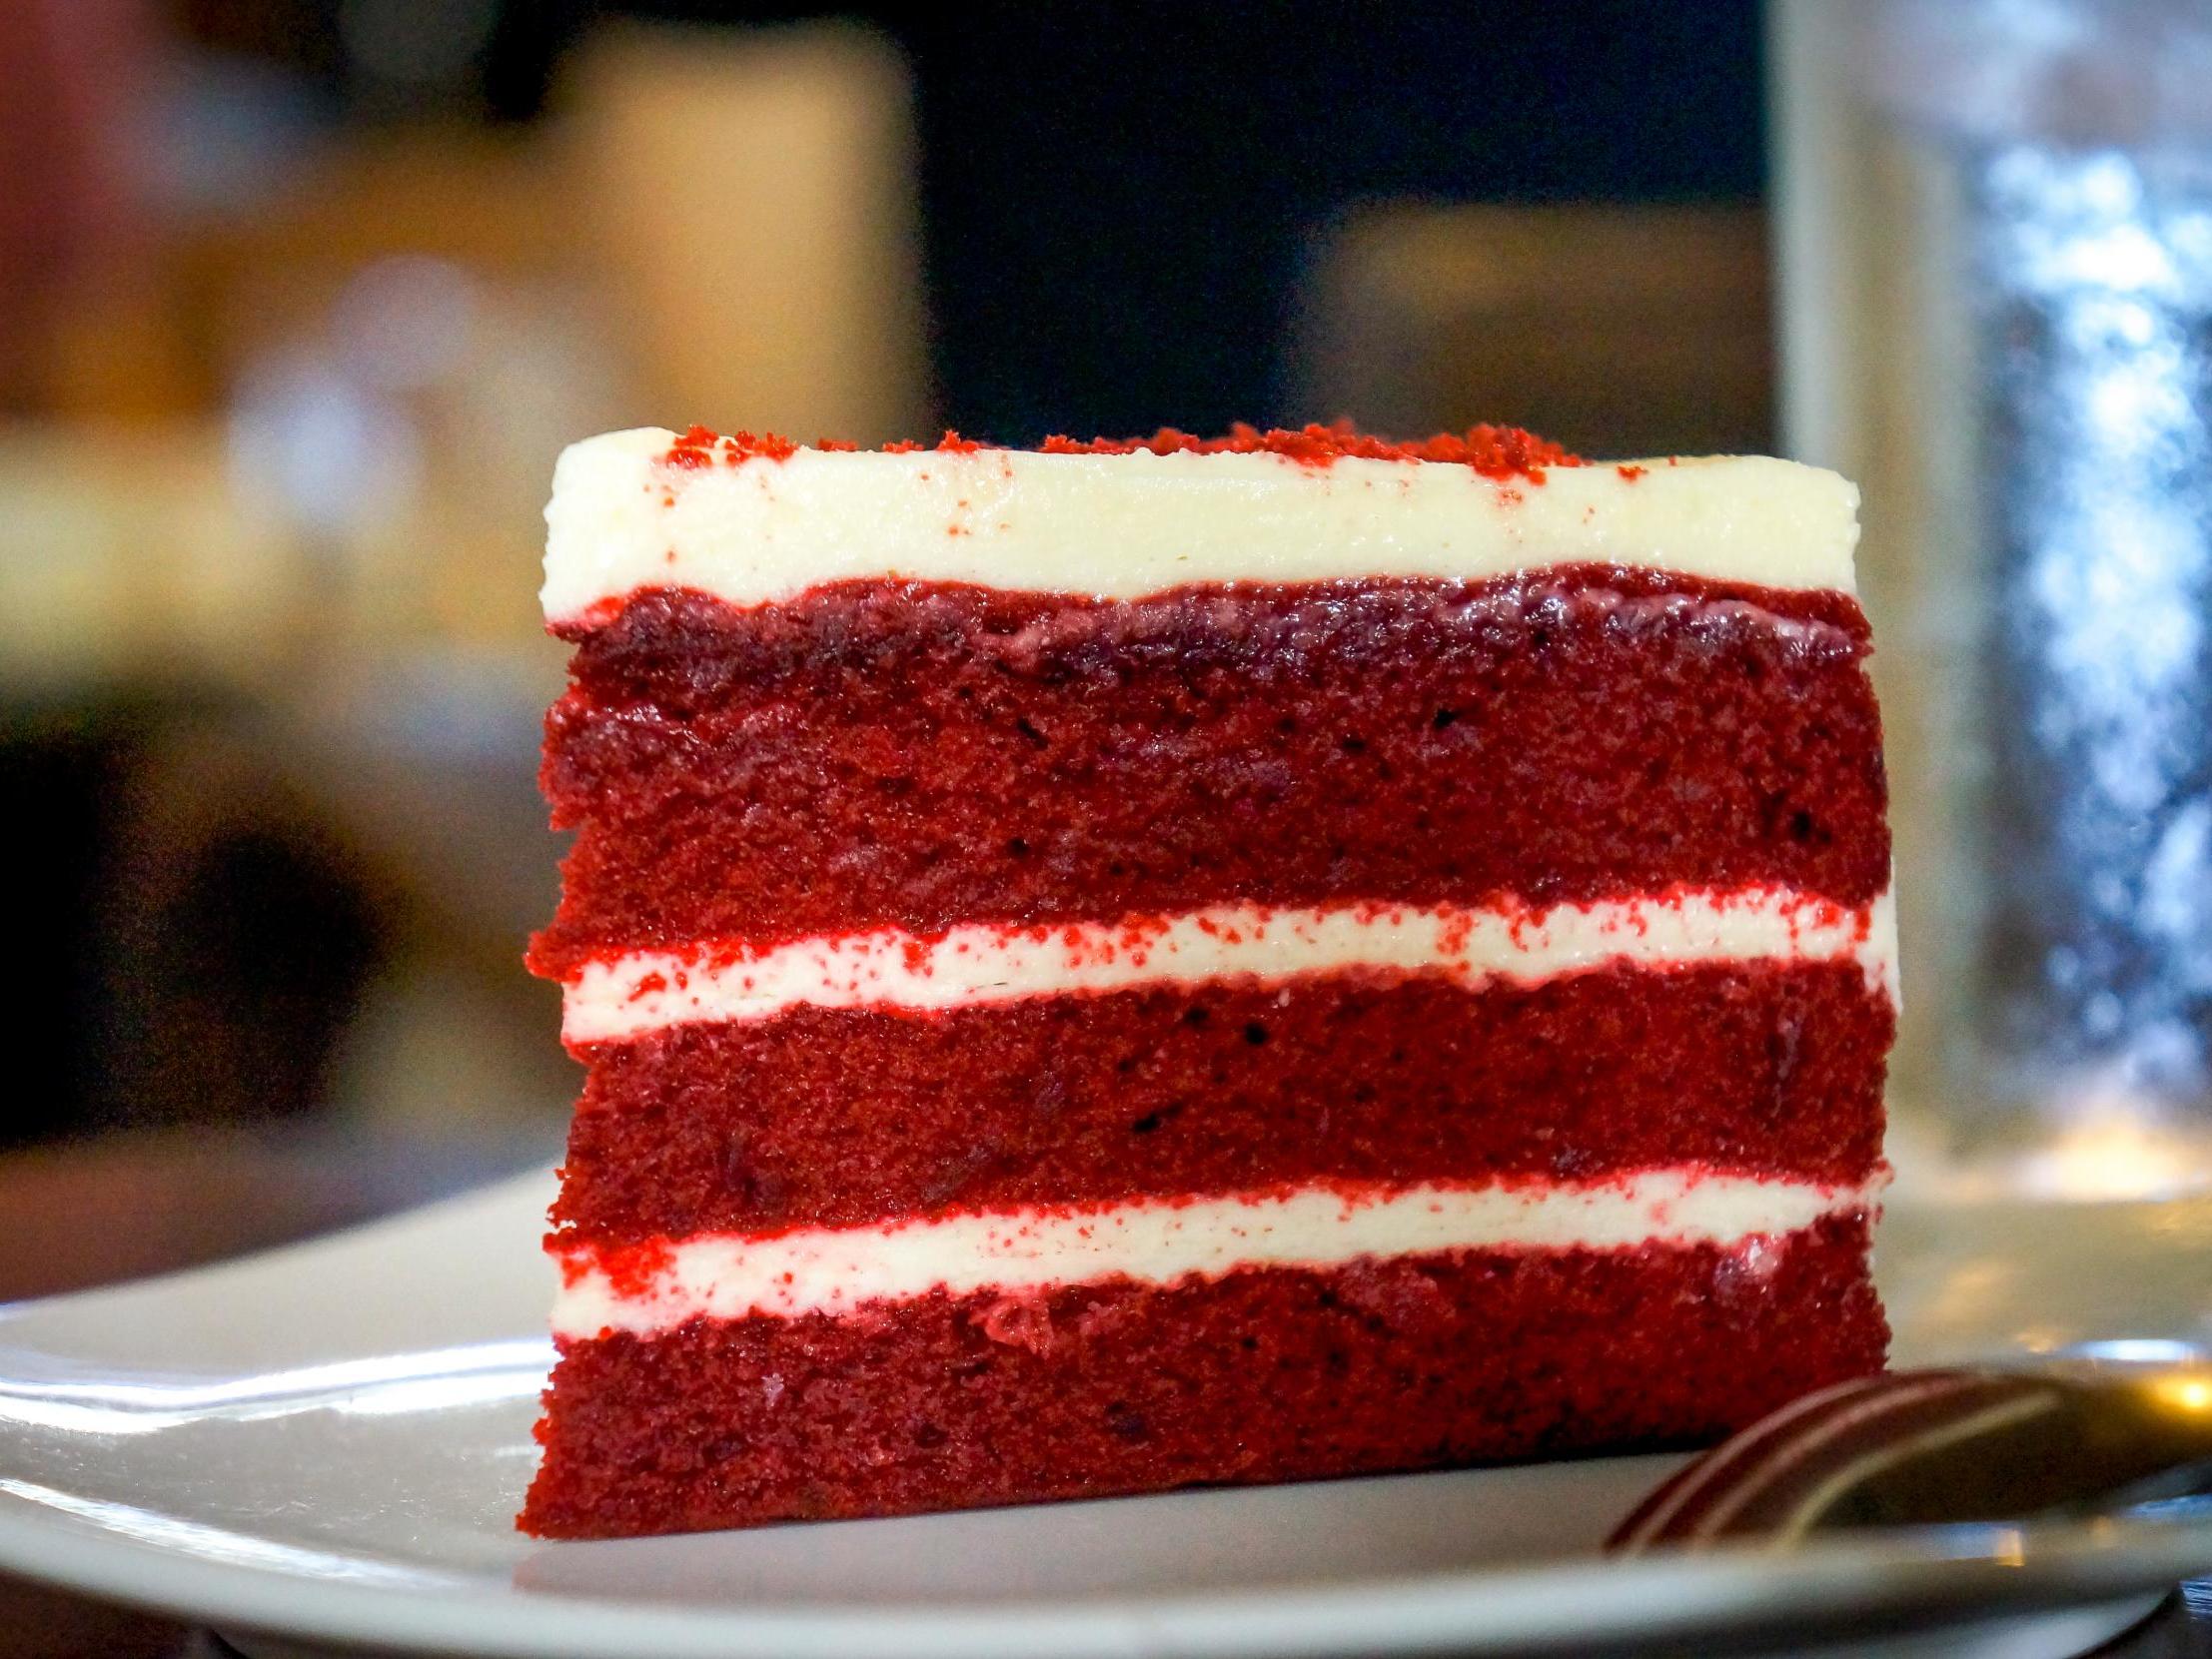 File image of red velvet cake.